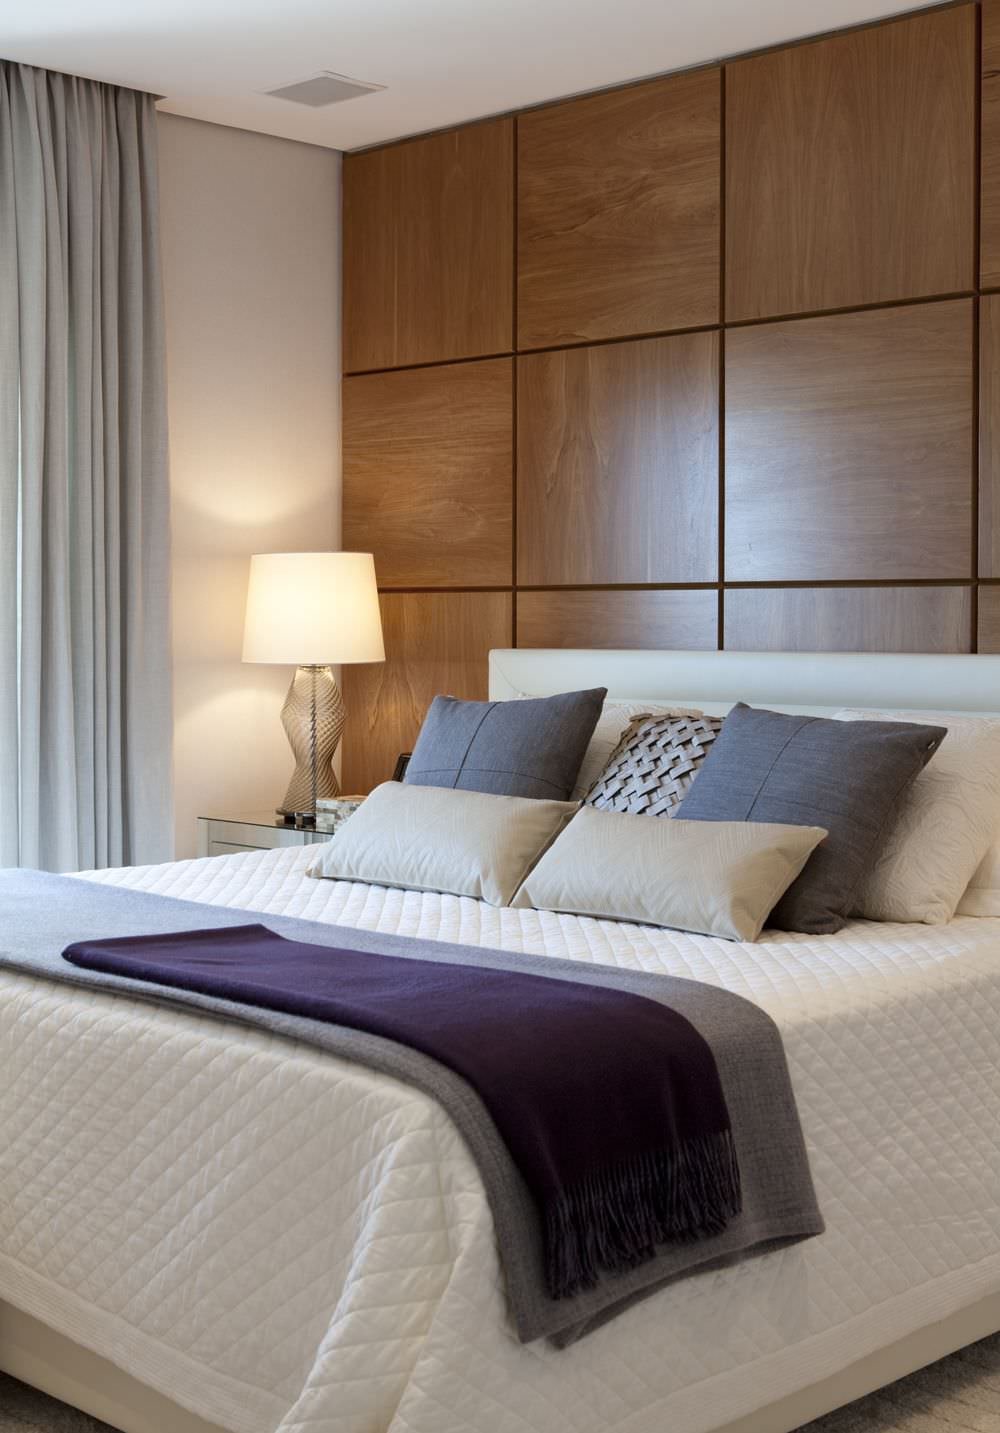 Camera da letto contemporanea moderna con la parete di testata in listoni di rovere. Stile elegante e raffinato.